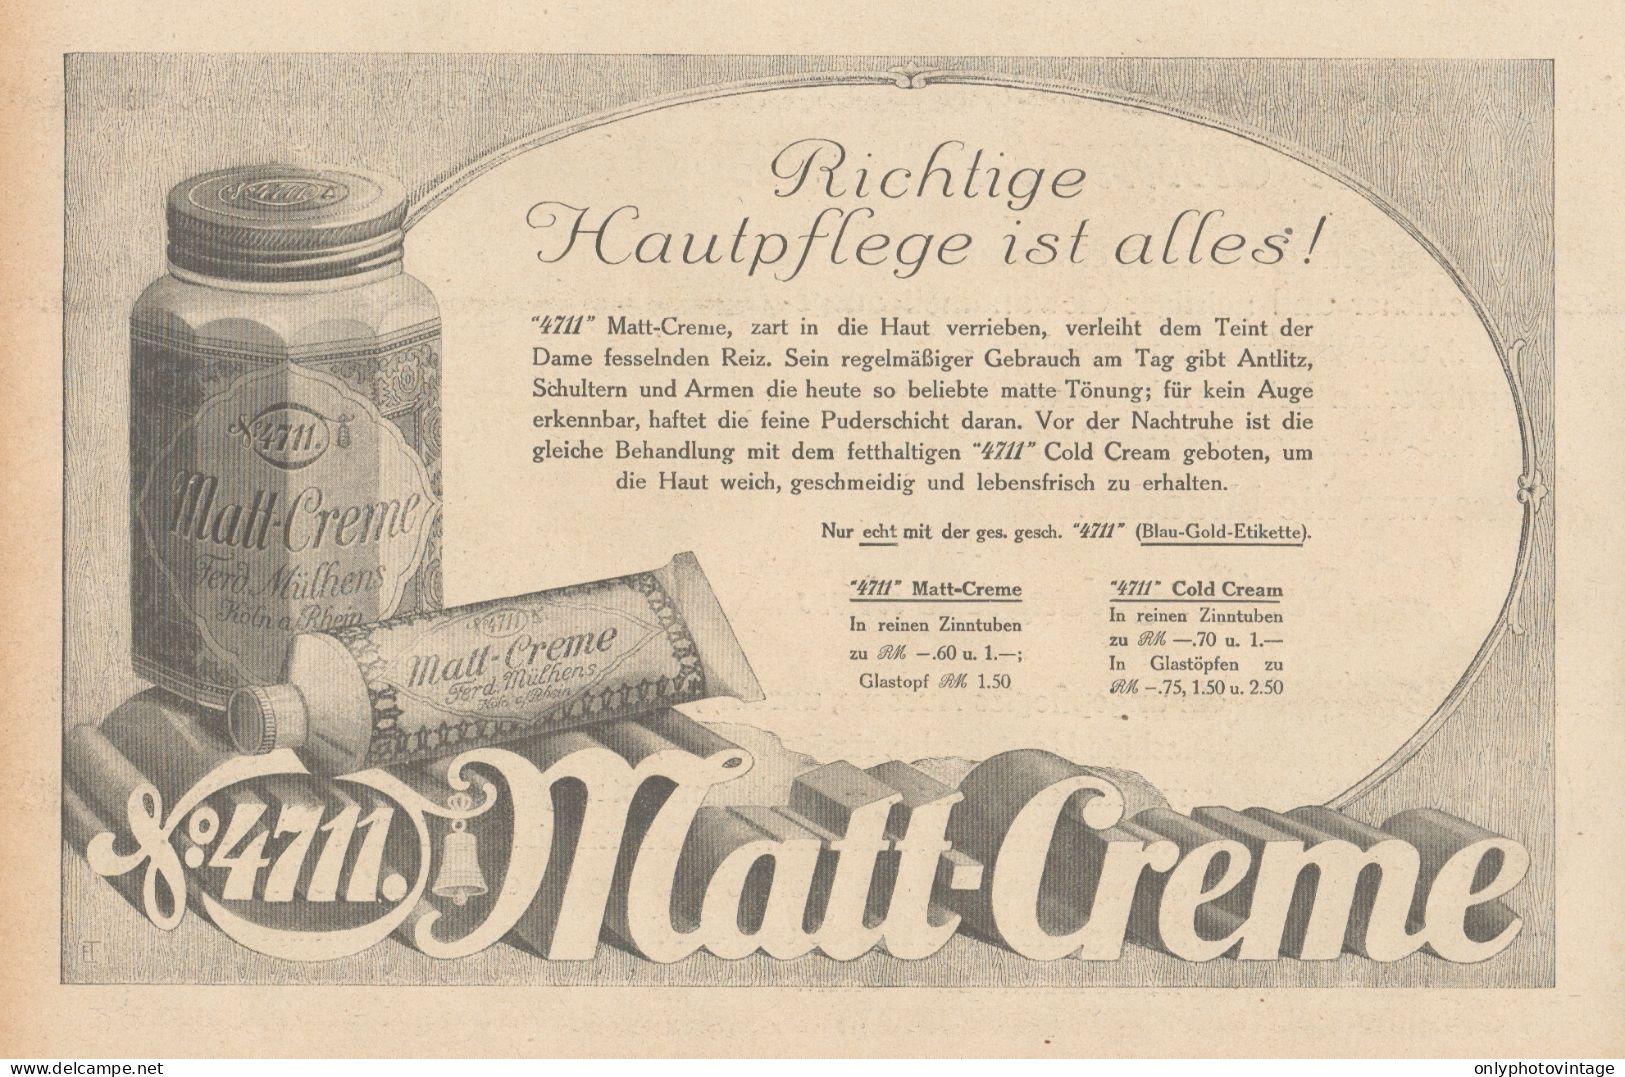 Matt Creme 4711 - Illustrazione - Pubblicità D'epoca - 1927 Old Advert - Publicidad